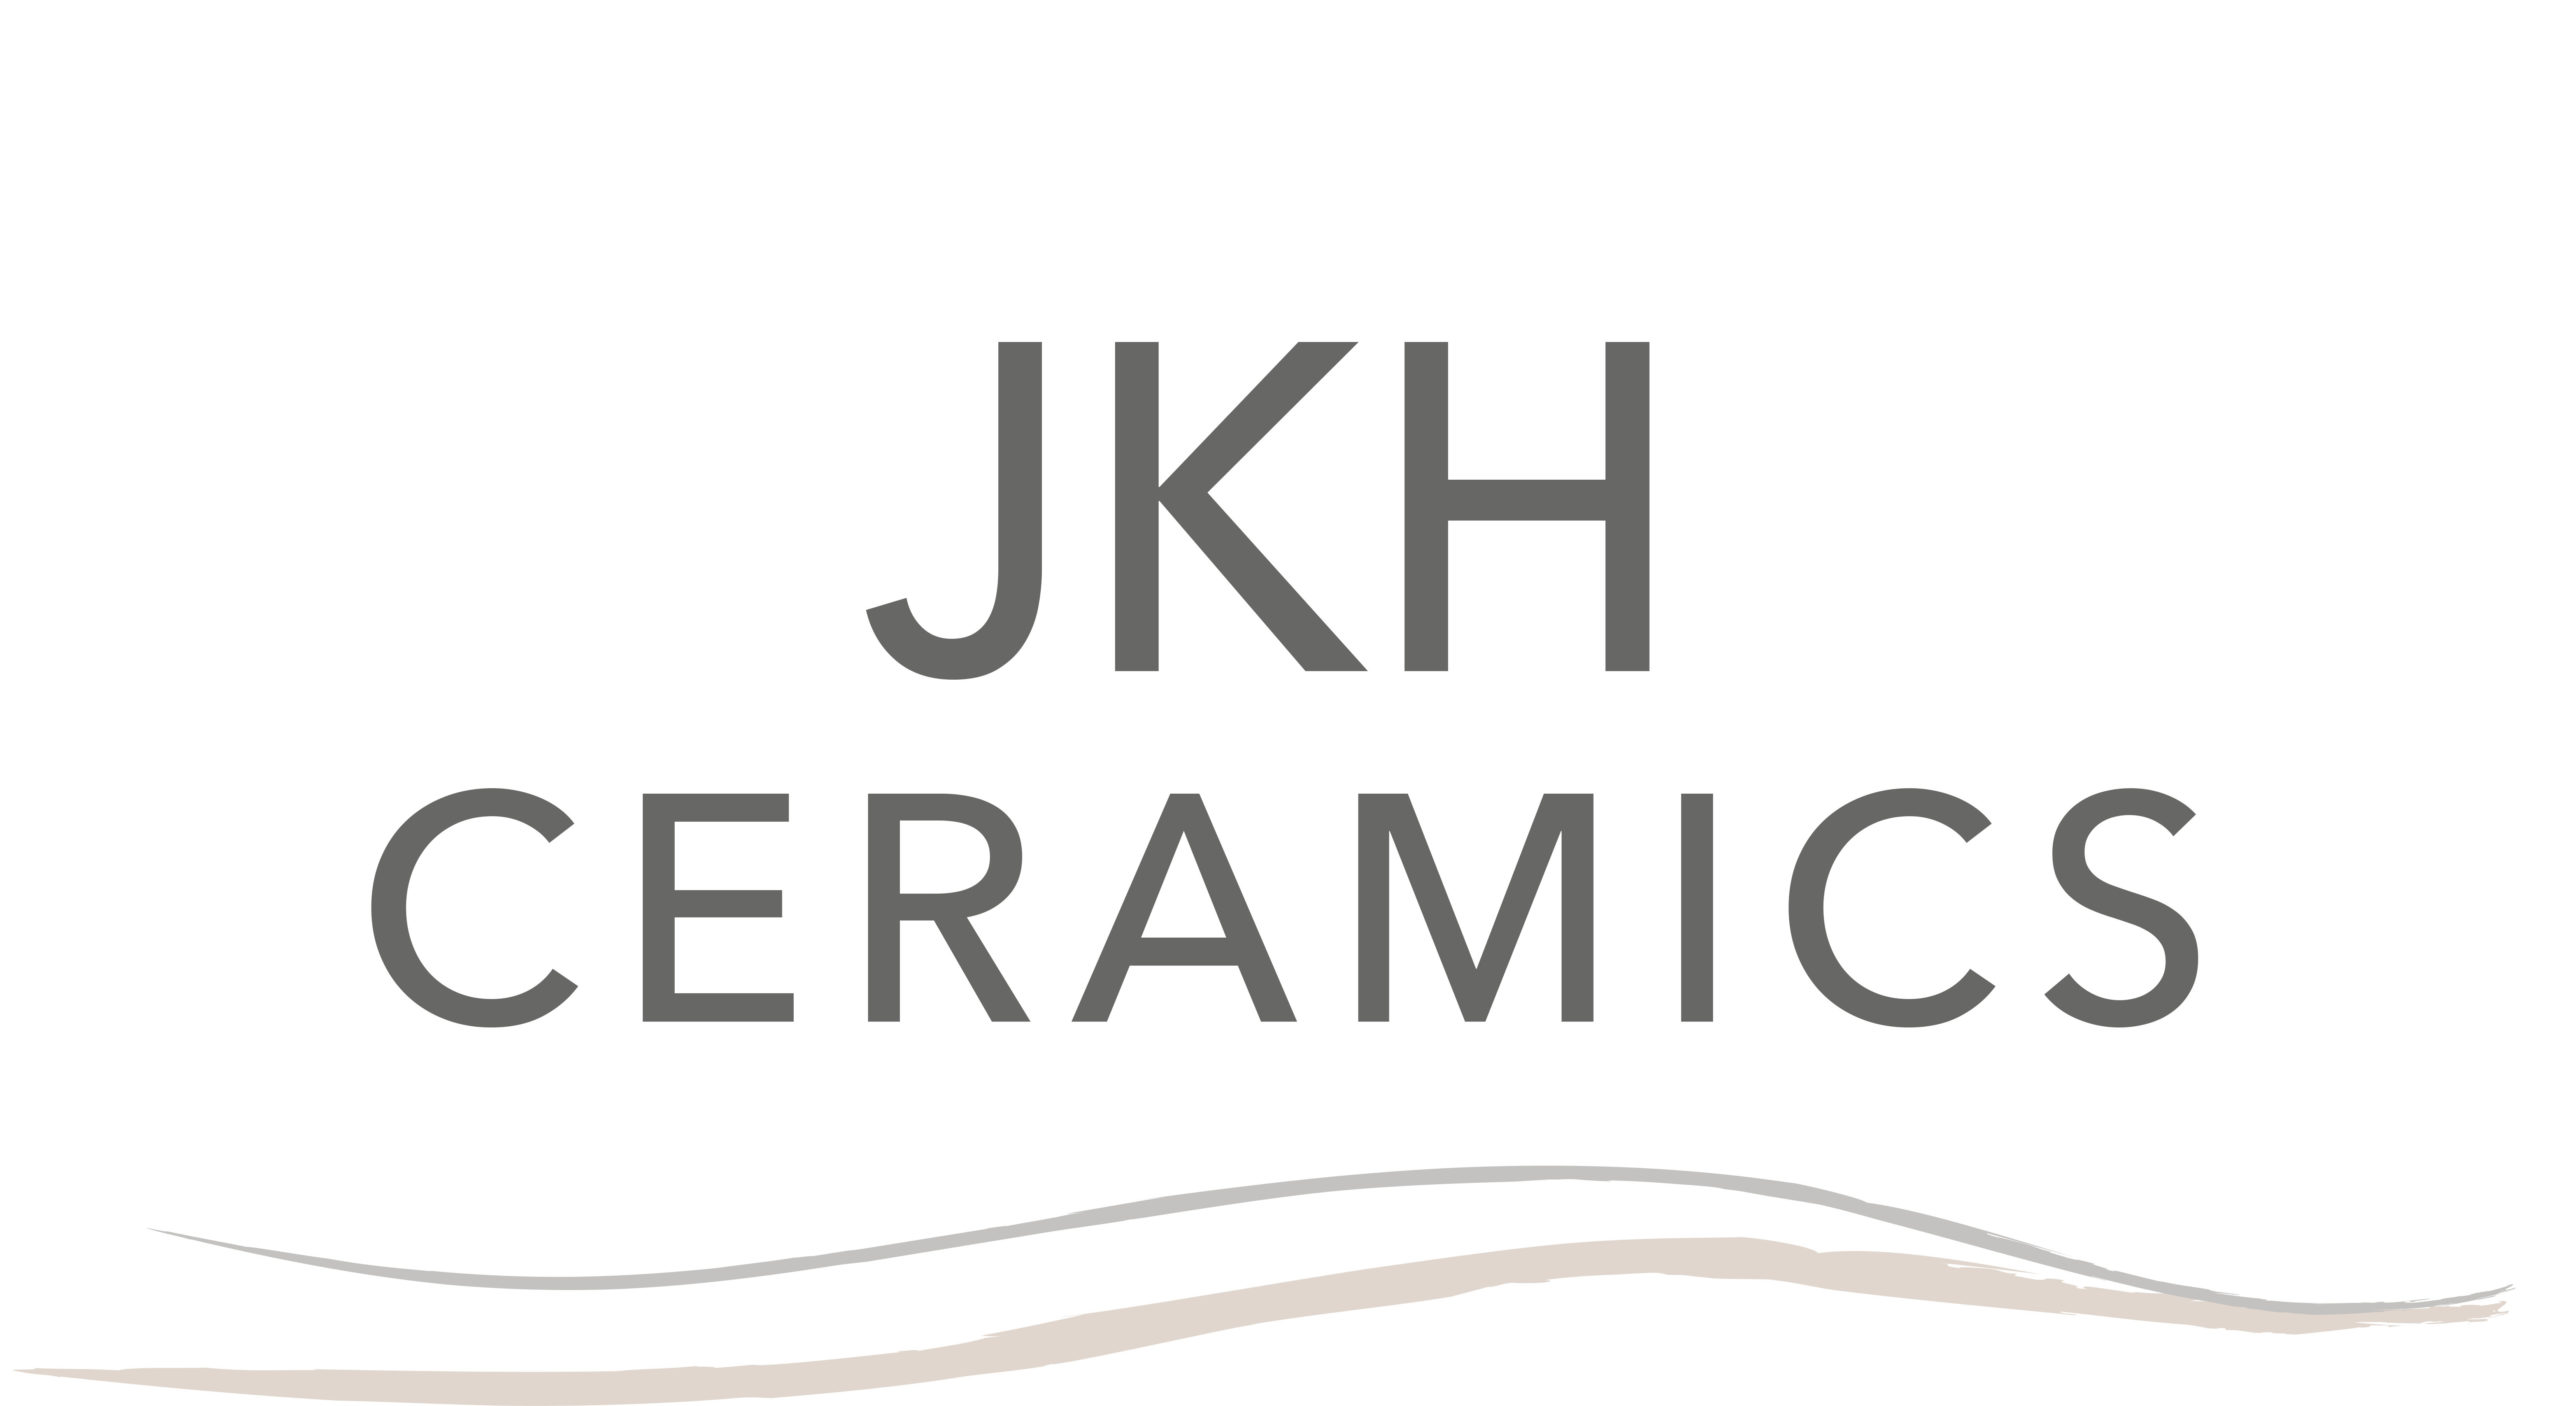 JKH Ceramics Studio